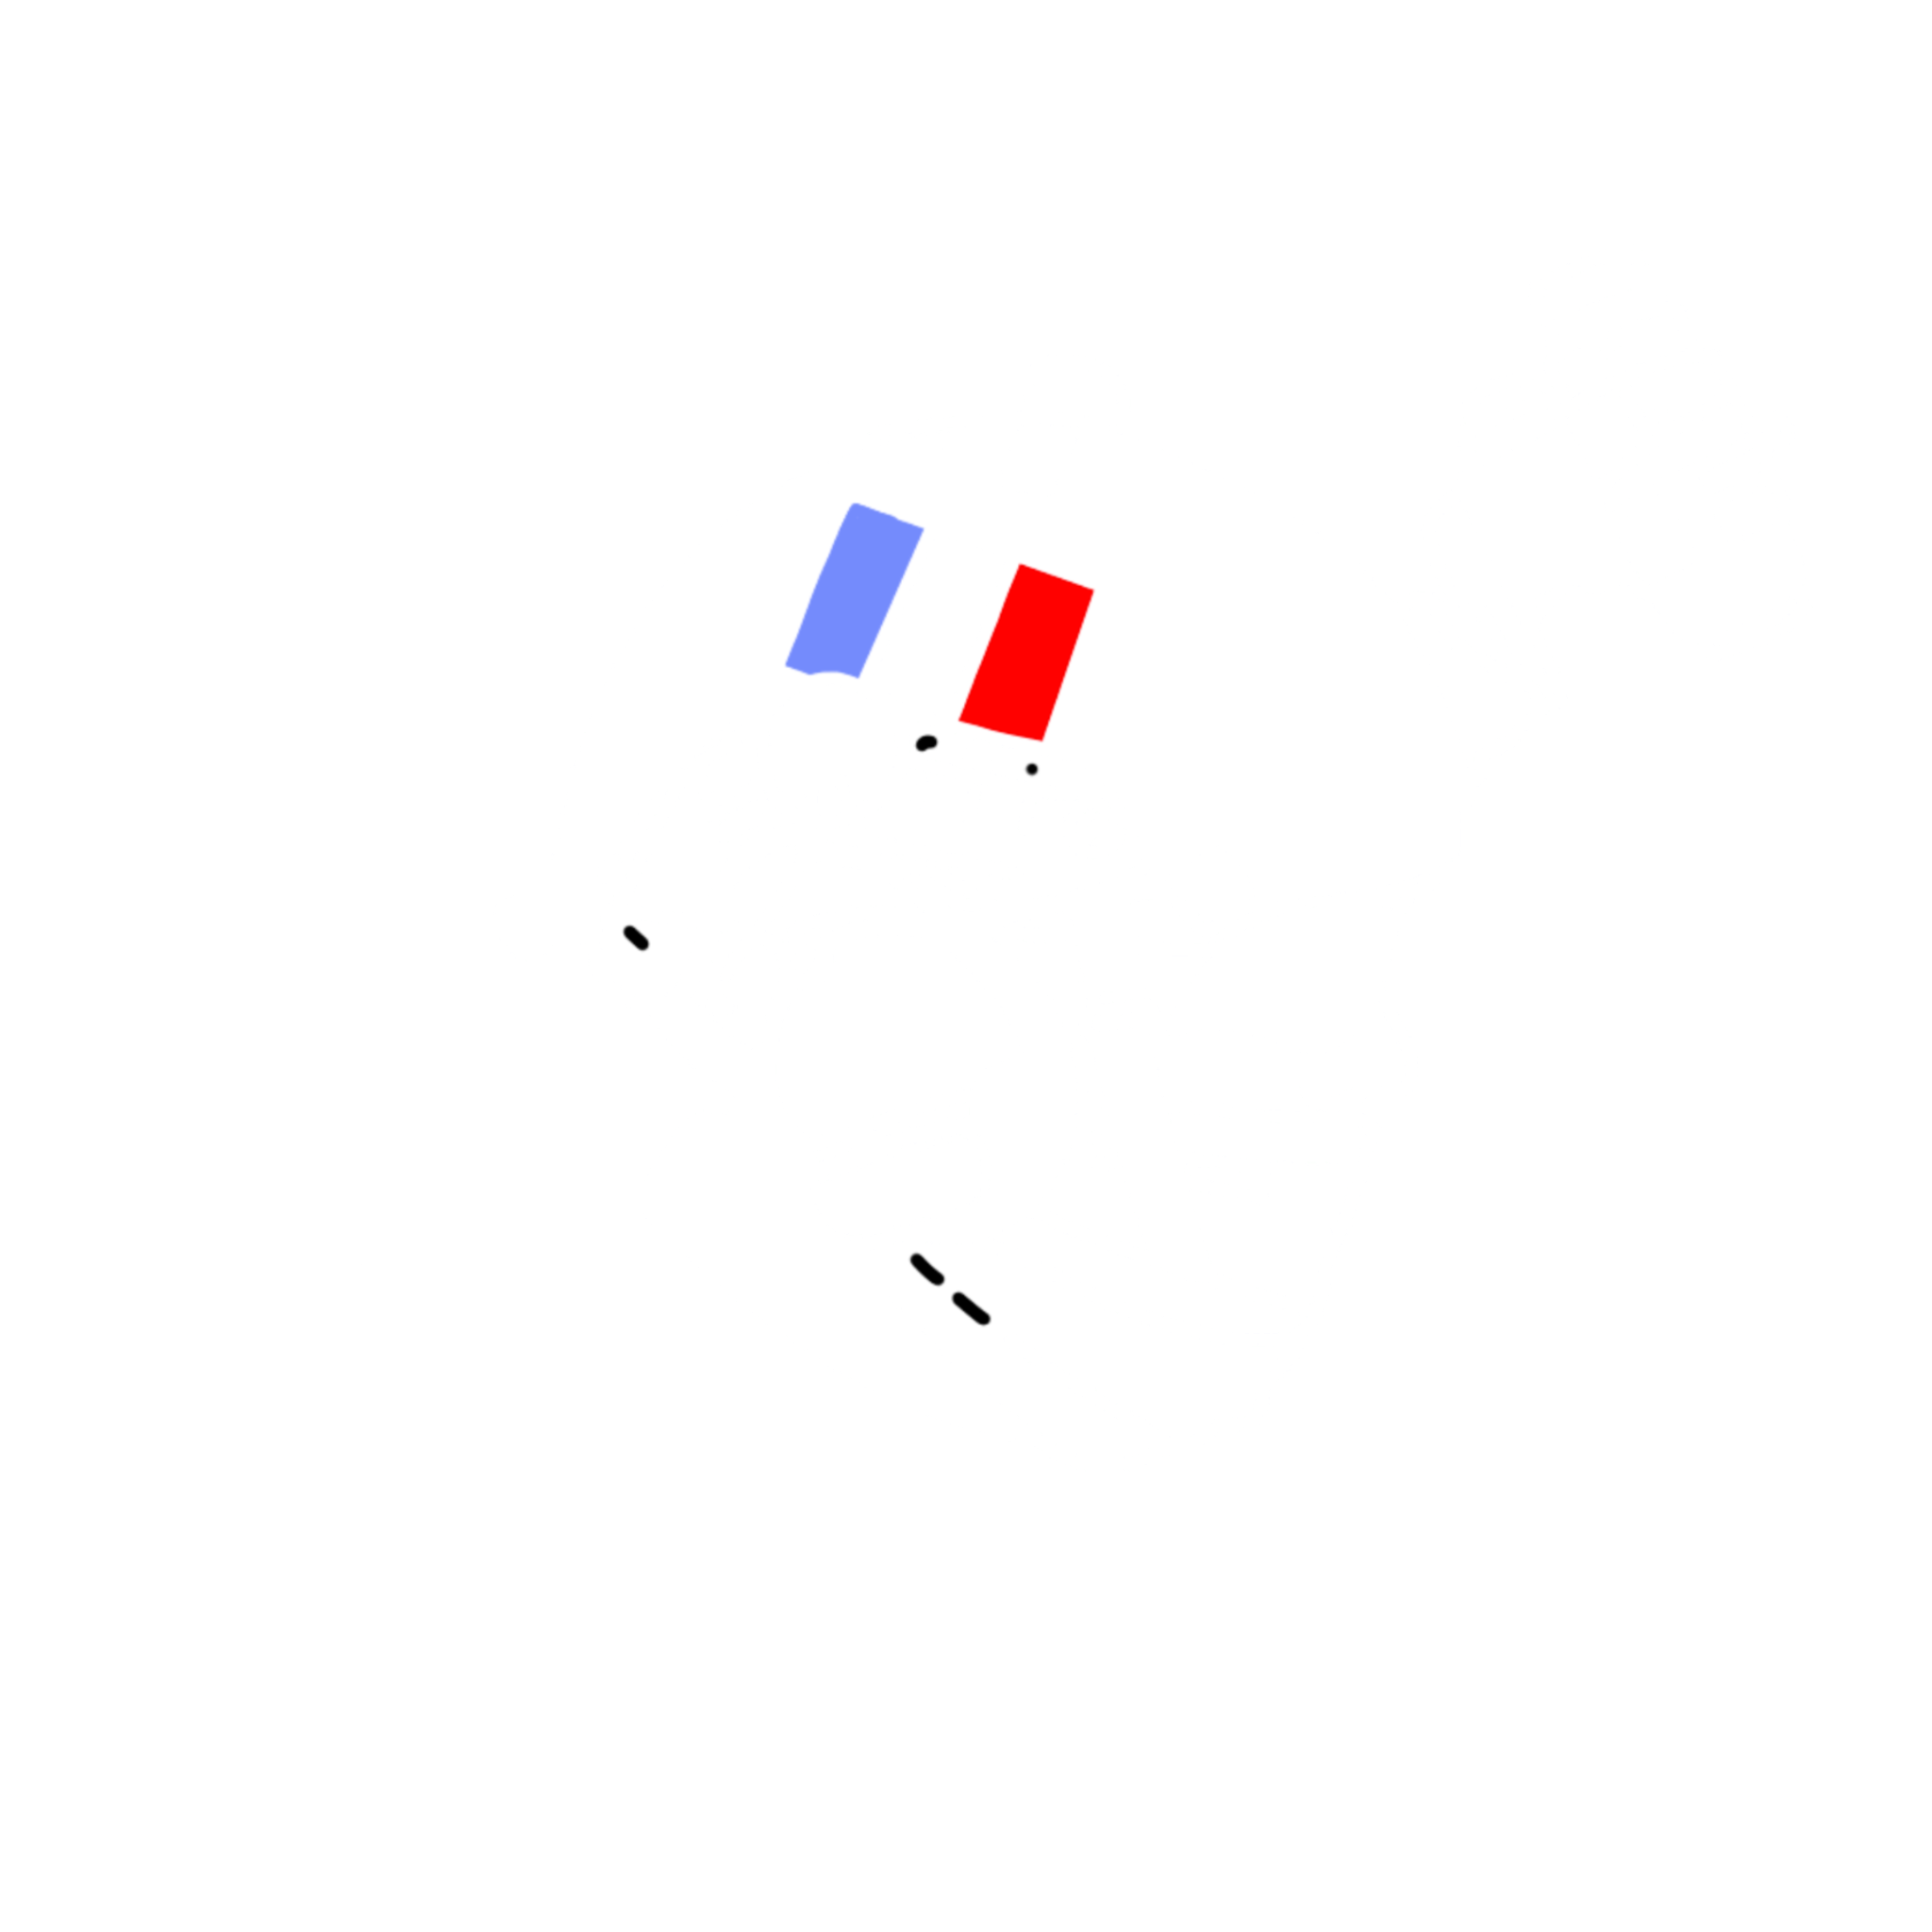 phil-team-entrainement-militaire-logo